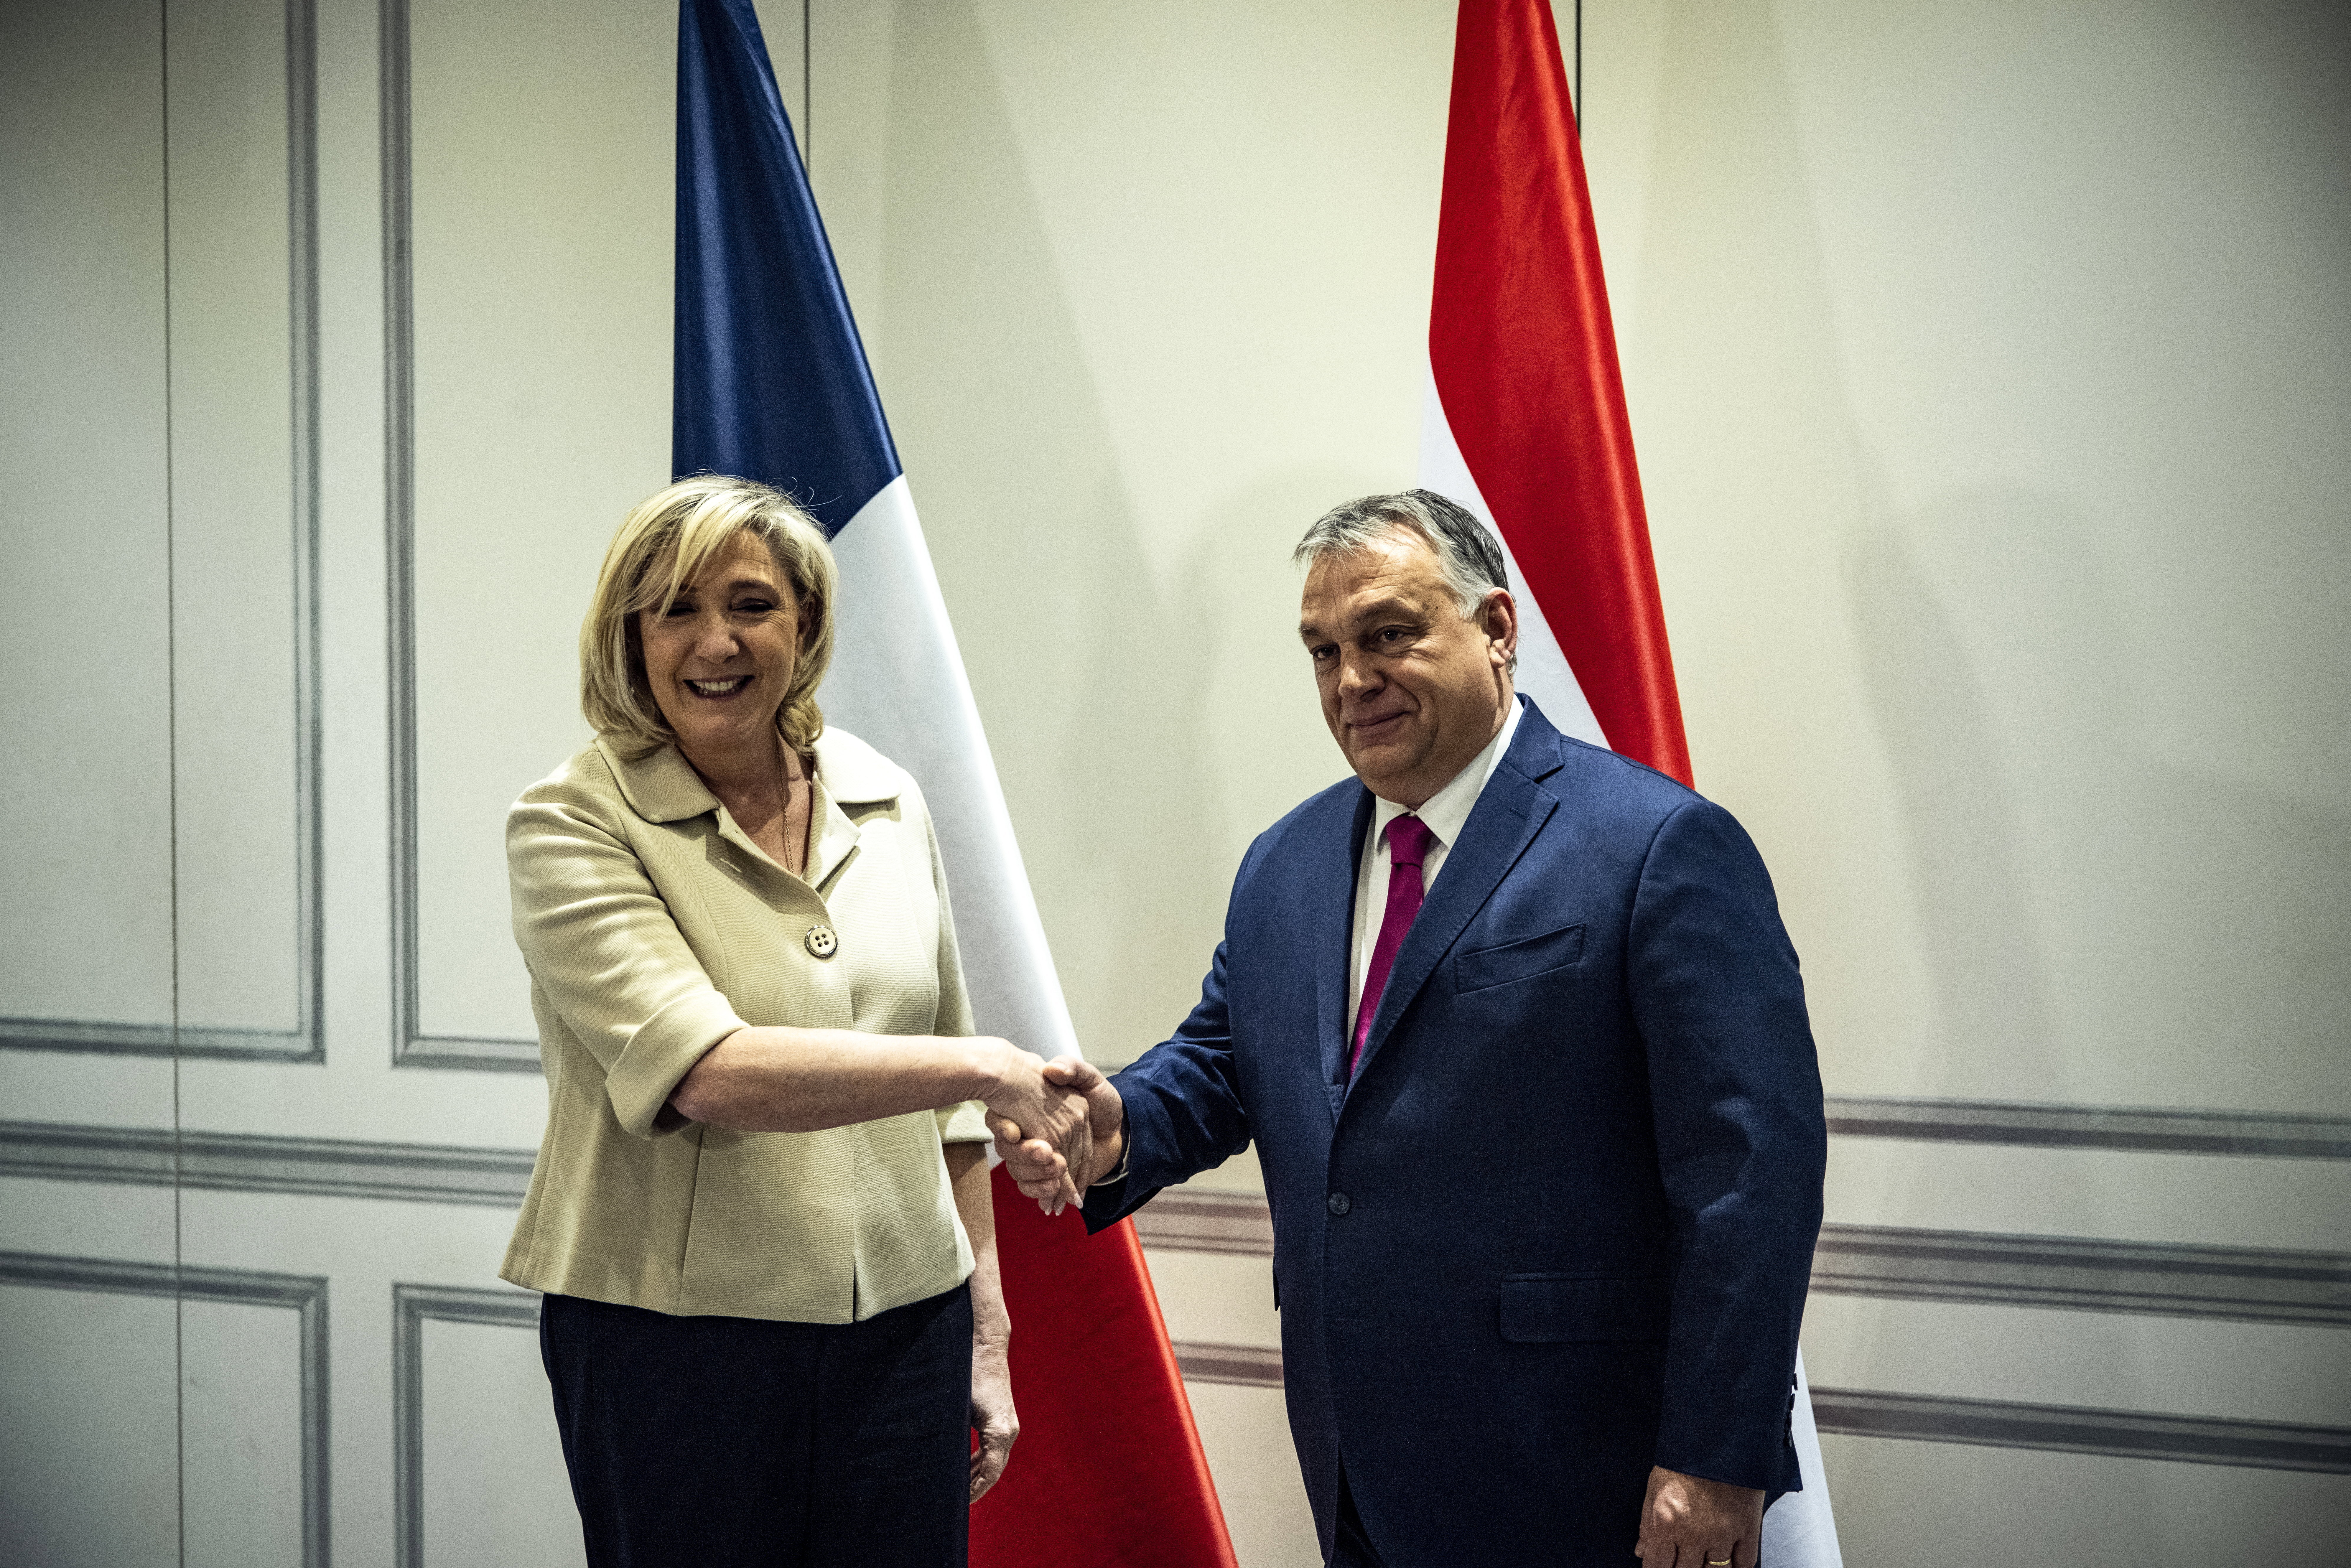 Le Pen vissza tudja adni a pénzt Mészáros Lőrinc bankjának